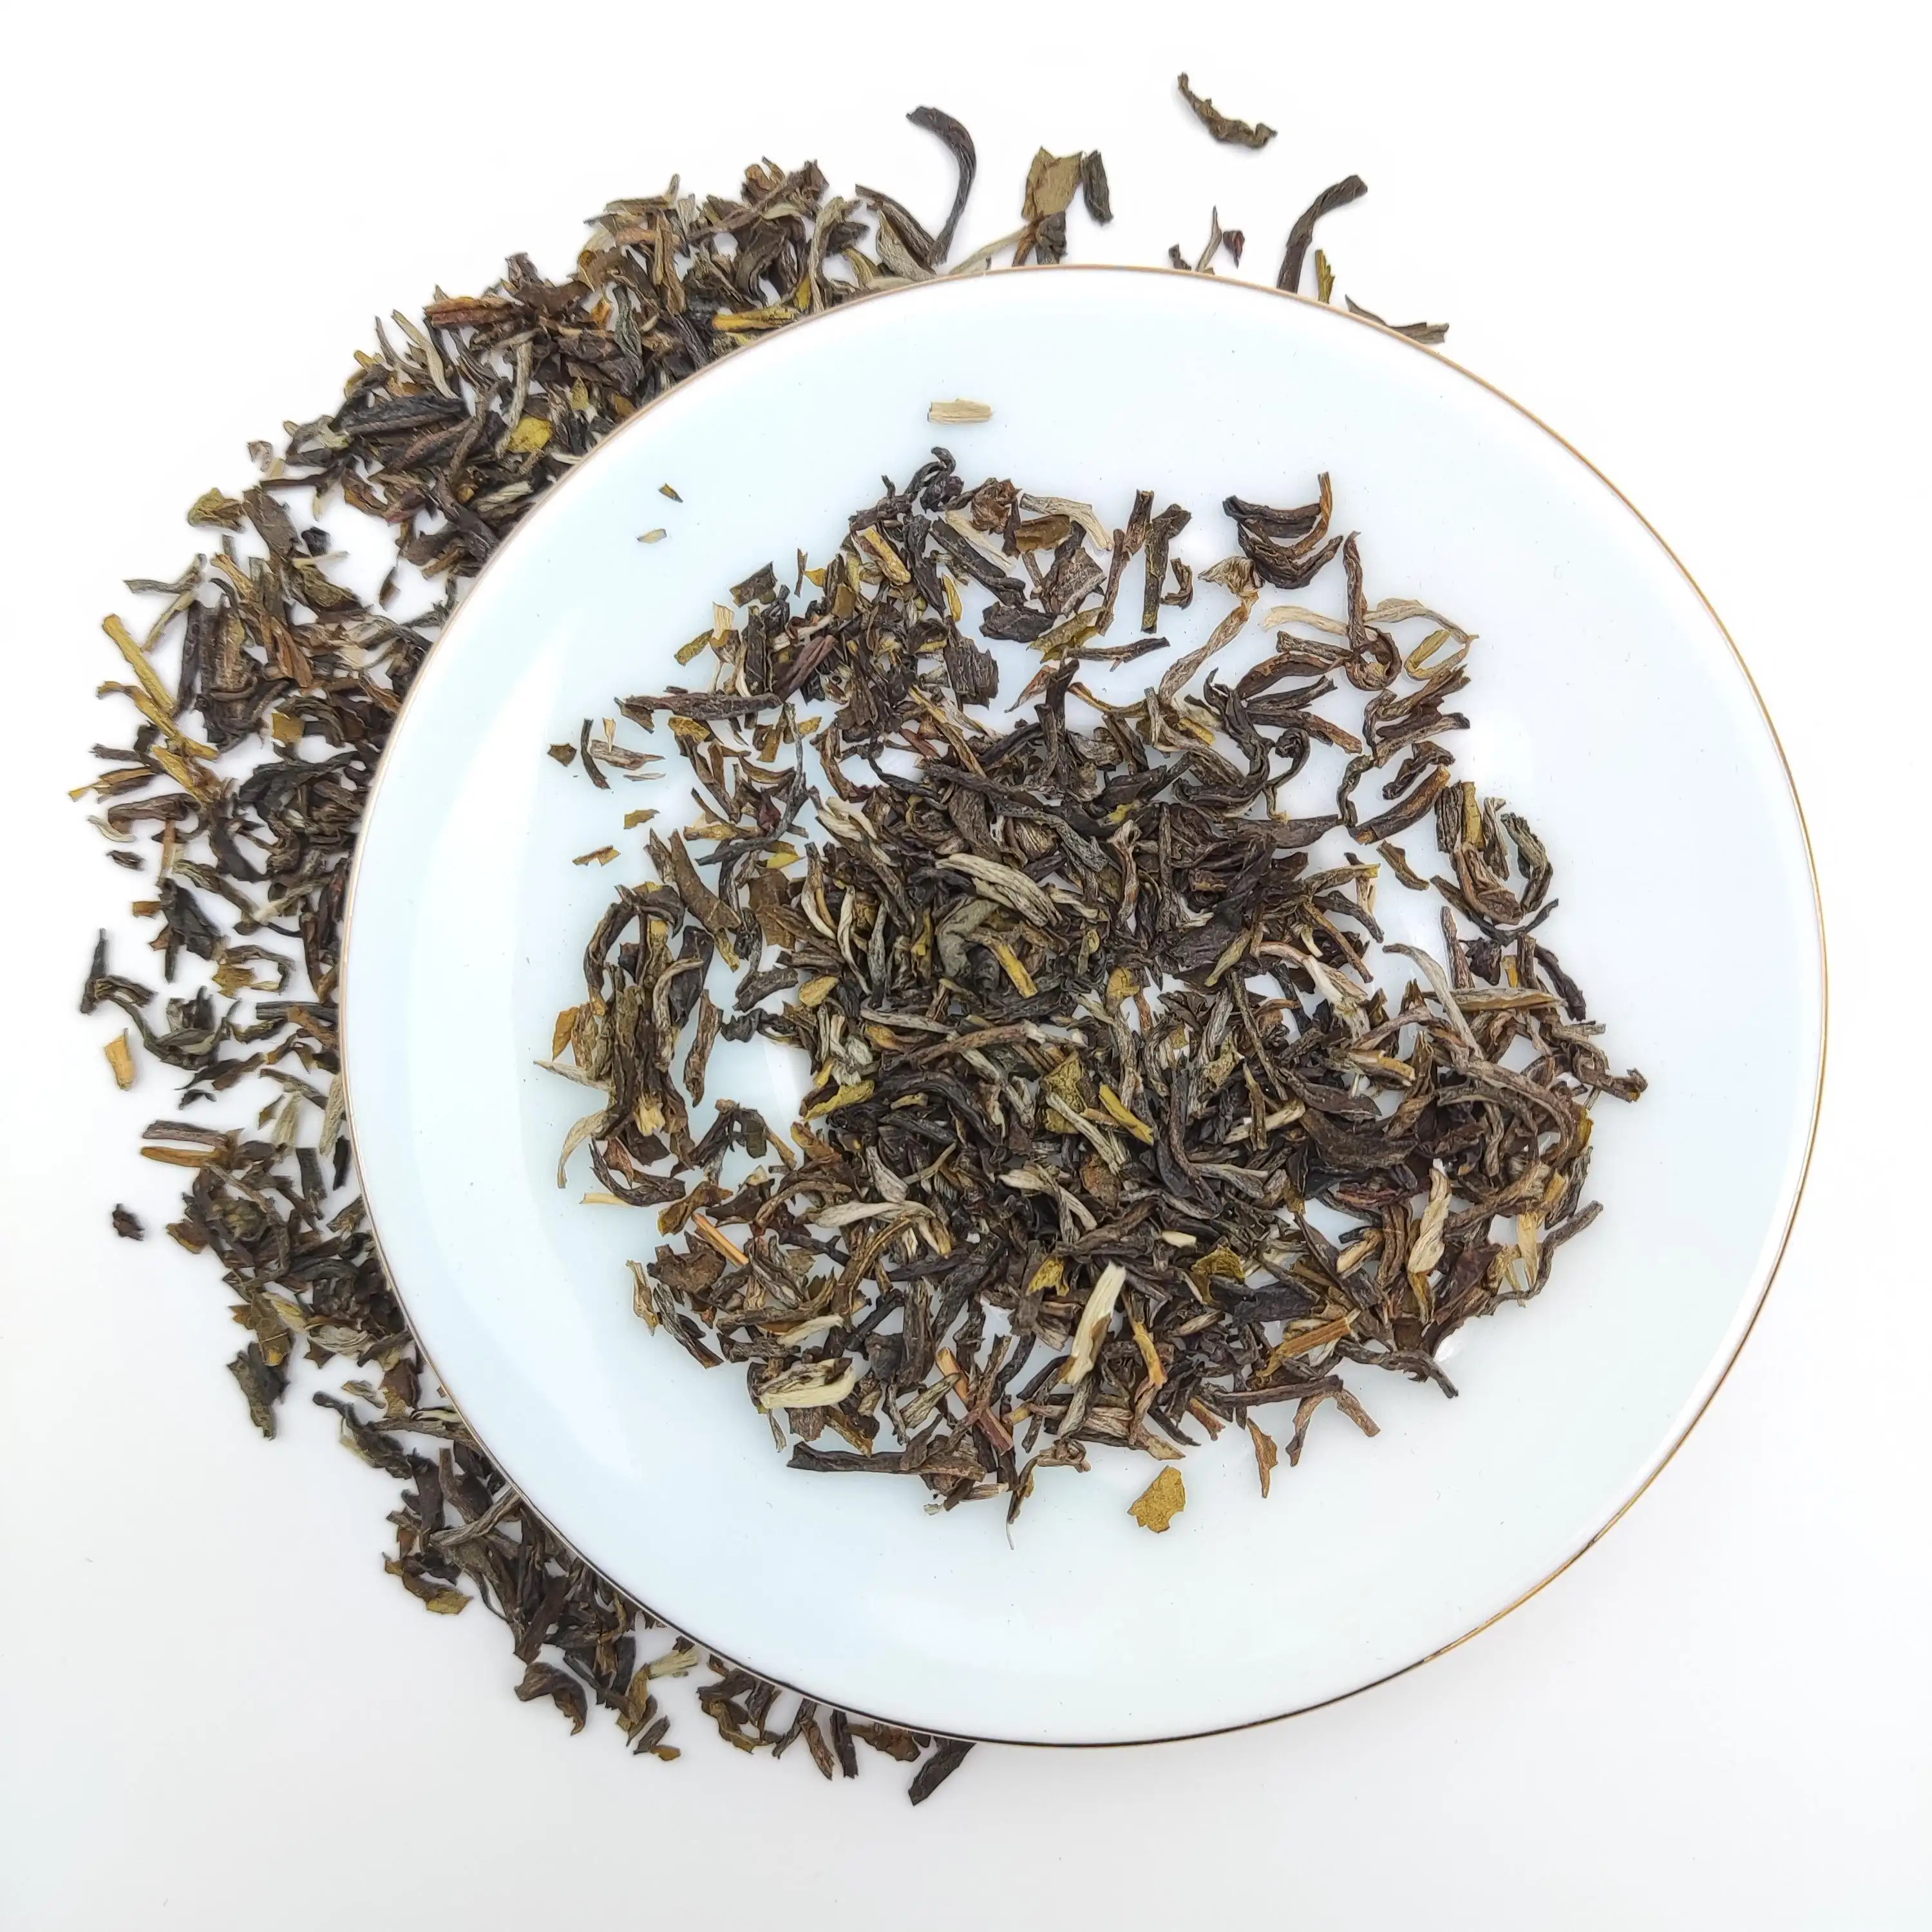 ชาจีนมาตรฐานสหภาพยุโรปพร้อมกลิ่นหอมของดอกไม้ชาเขียวมะลิสดมีกลิ่นหอม